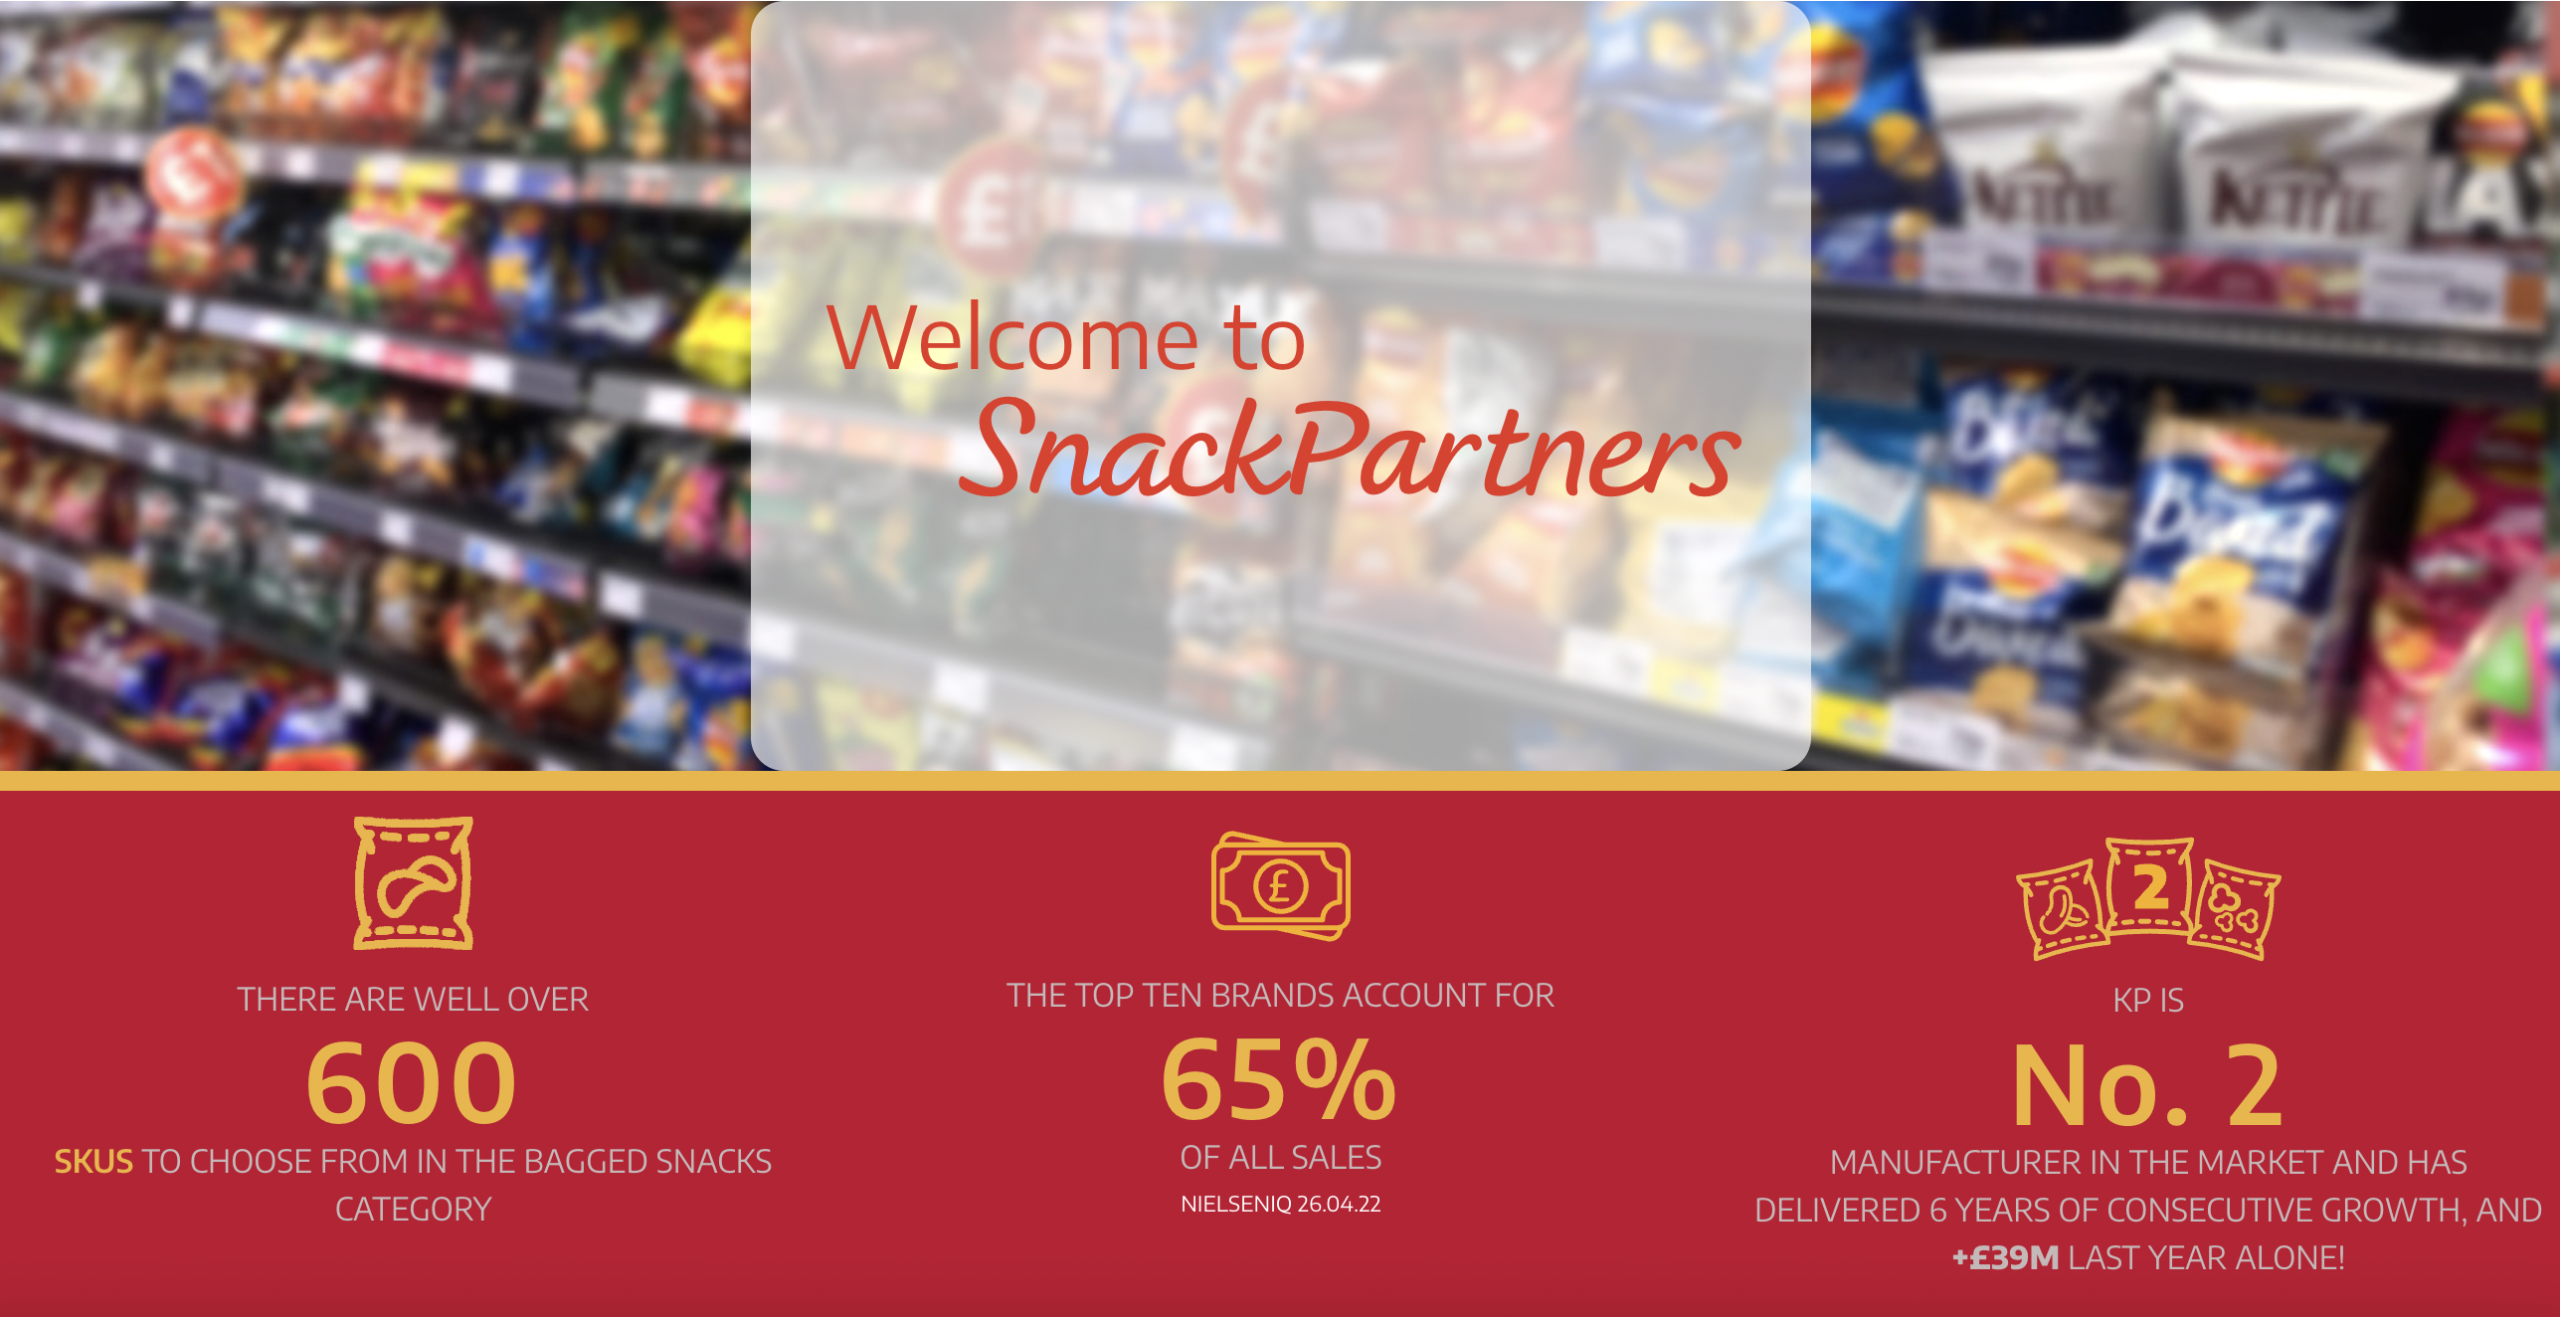 KP SnacKPartners website ramps up retailer and wholesaler support